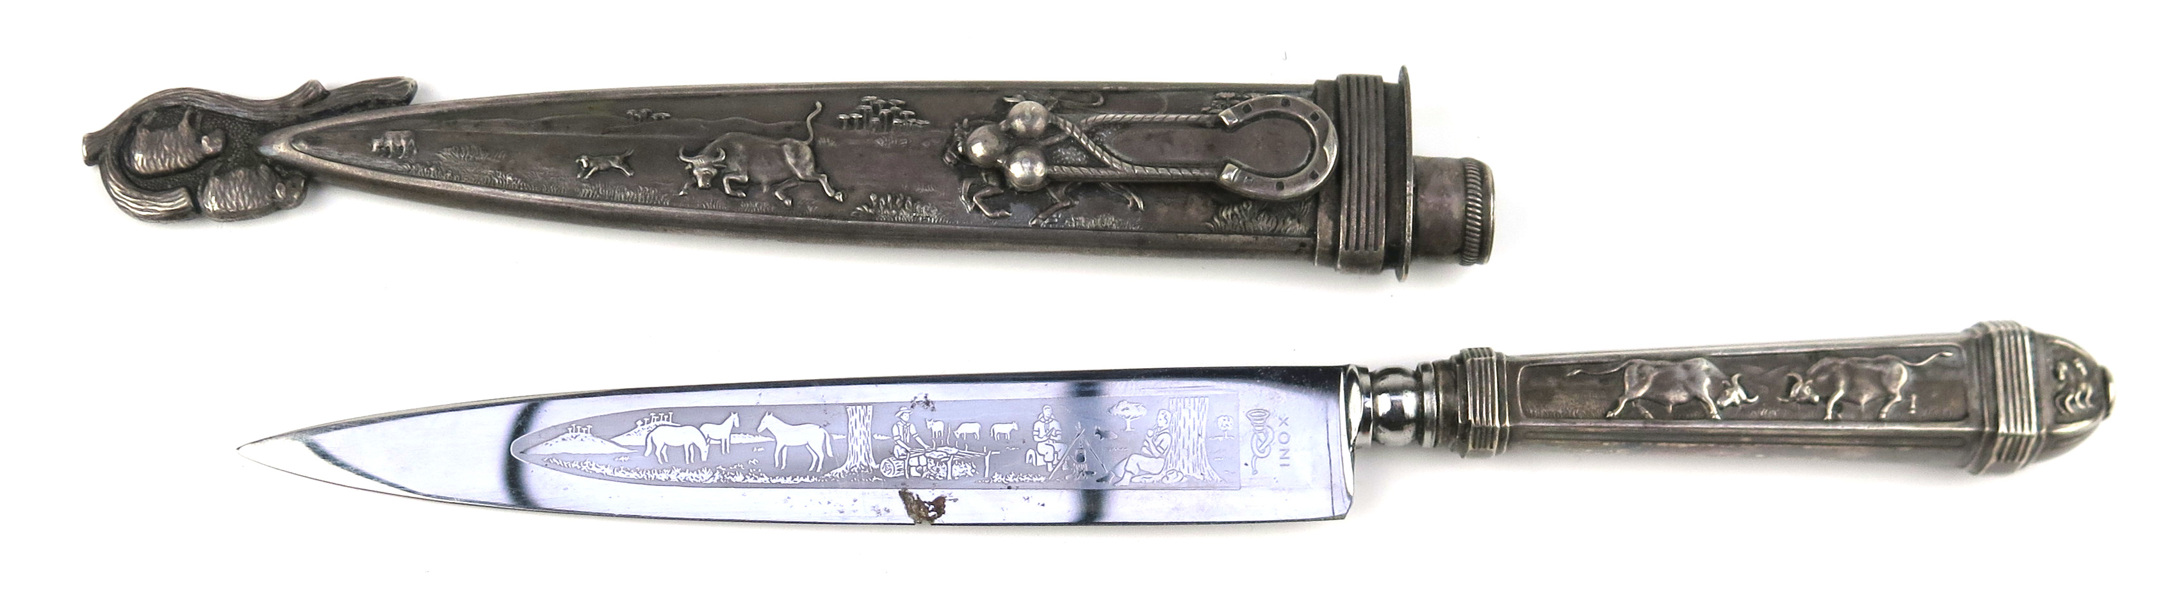 Kniv i balja, så kallad Gauchokniv, nysilver och stål, 1900-talets 2 hälft, _15891a_8d9da7a90a6869b_lg.jpeg